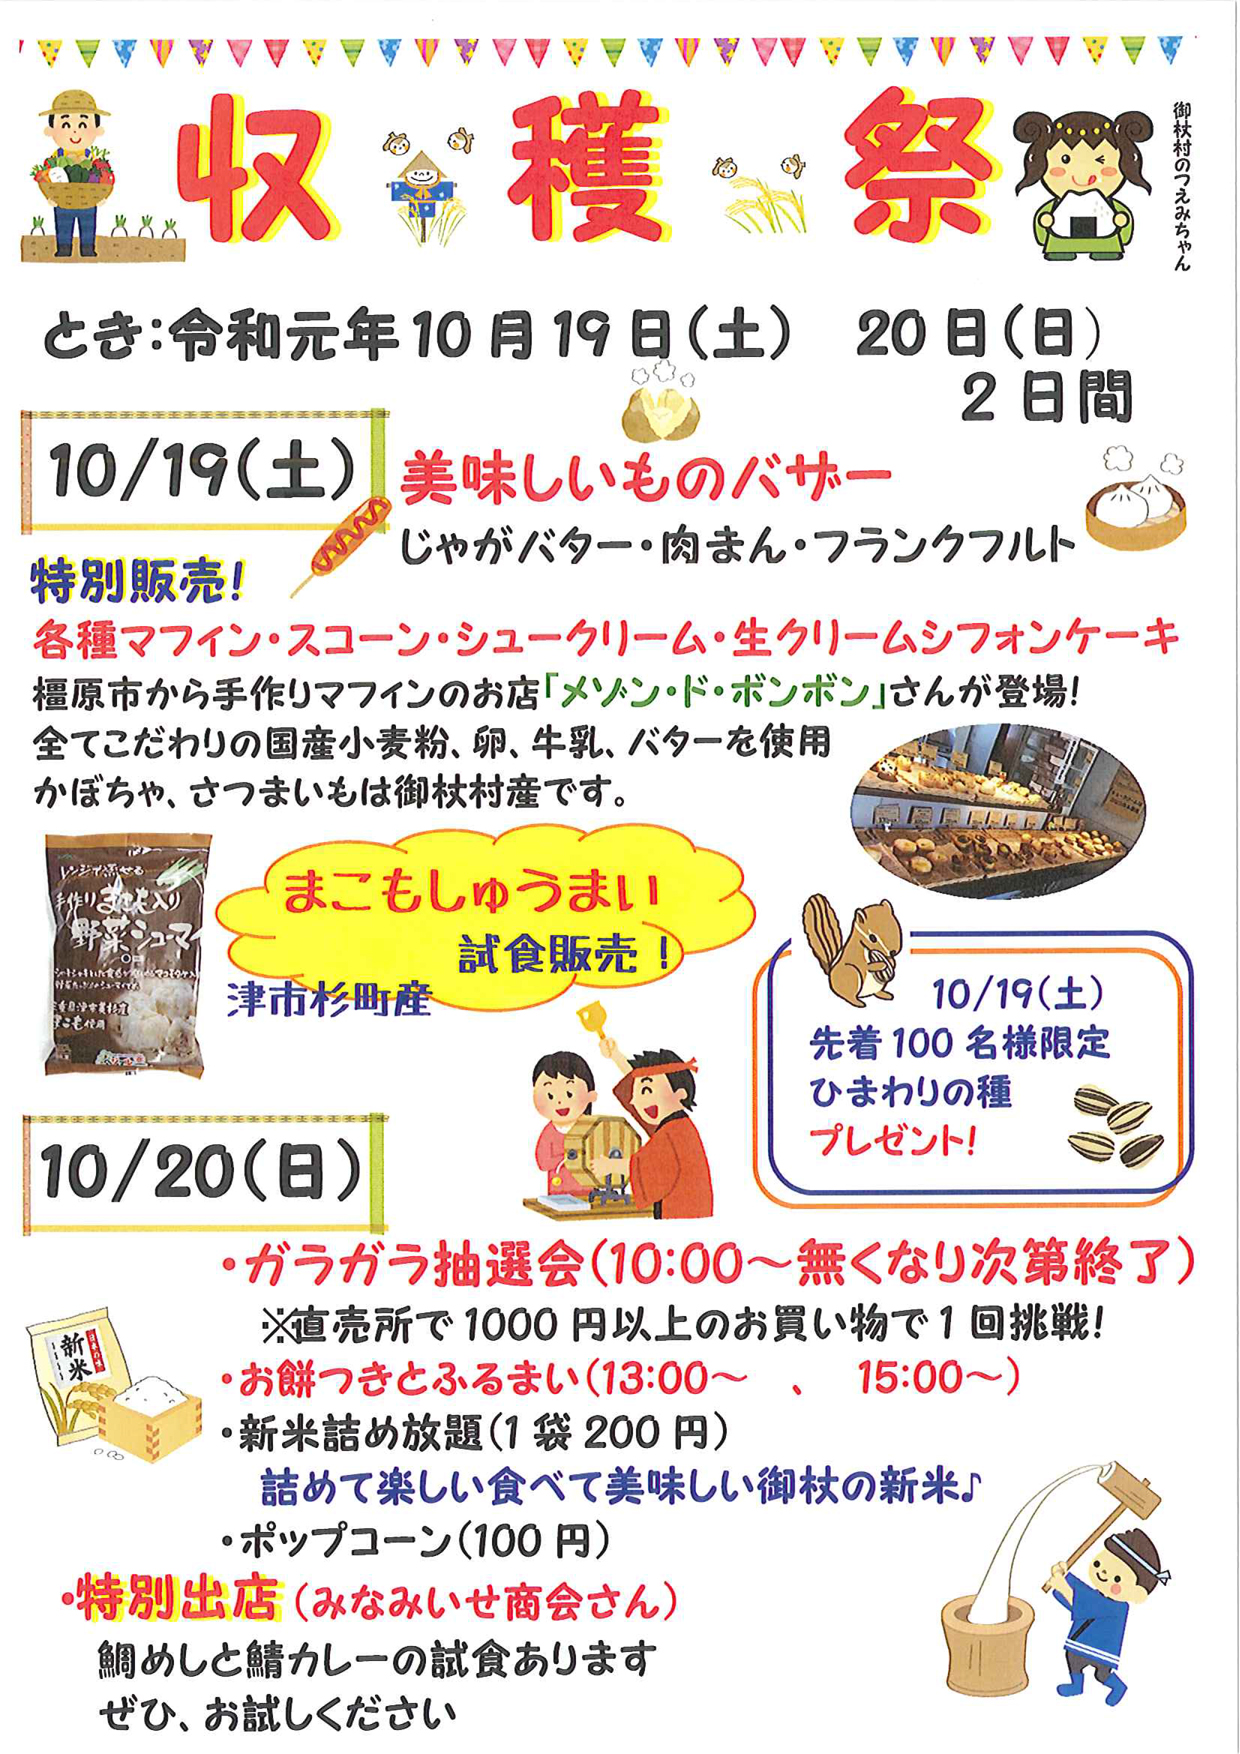 10月19日〜10月20日　道の駅「収穫際」10/19(土)・20(日)開催